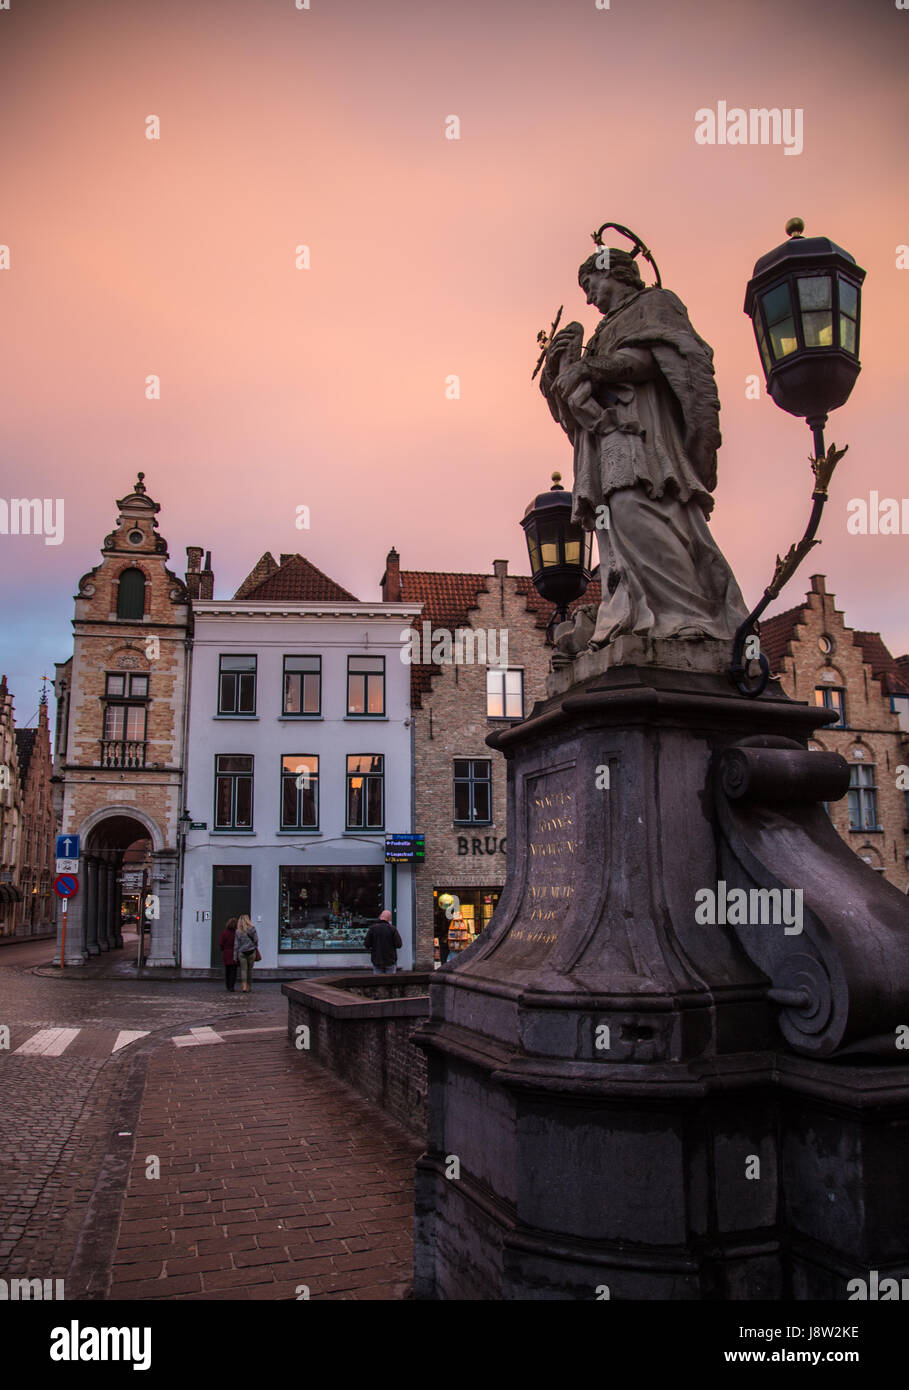 Une statue et lampe guard l'un des ponts de Bruges, Belgique, au coucher du soleil. Banque D'Images